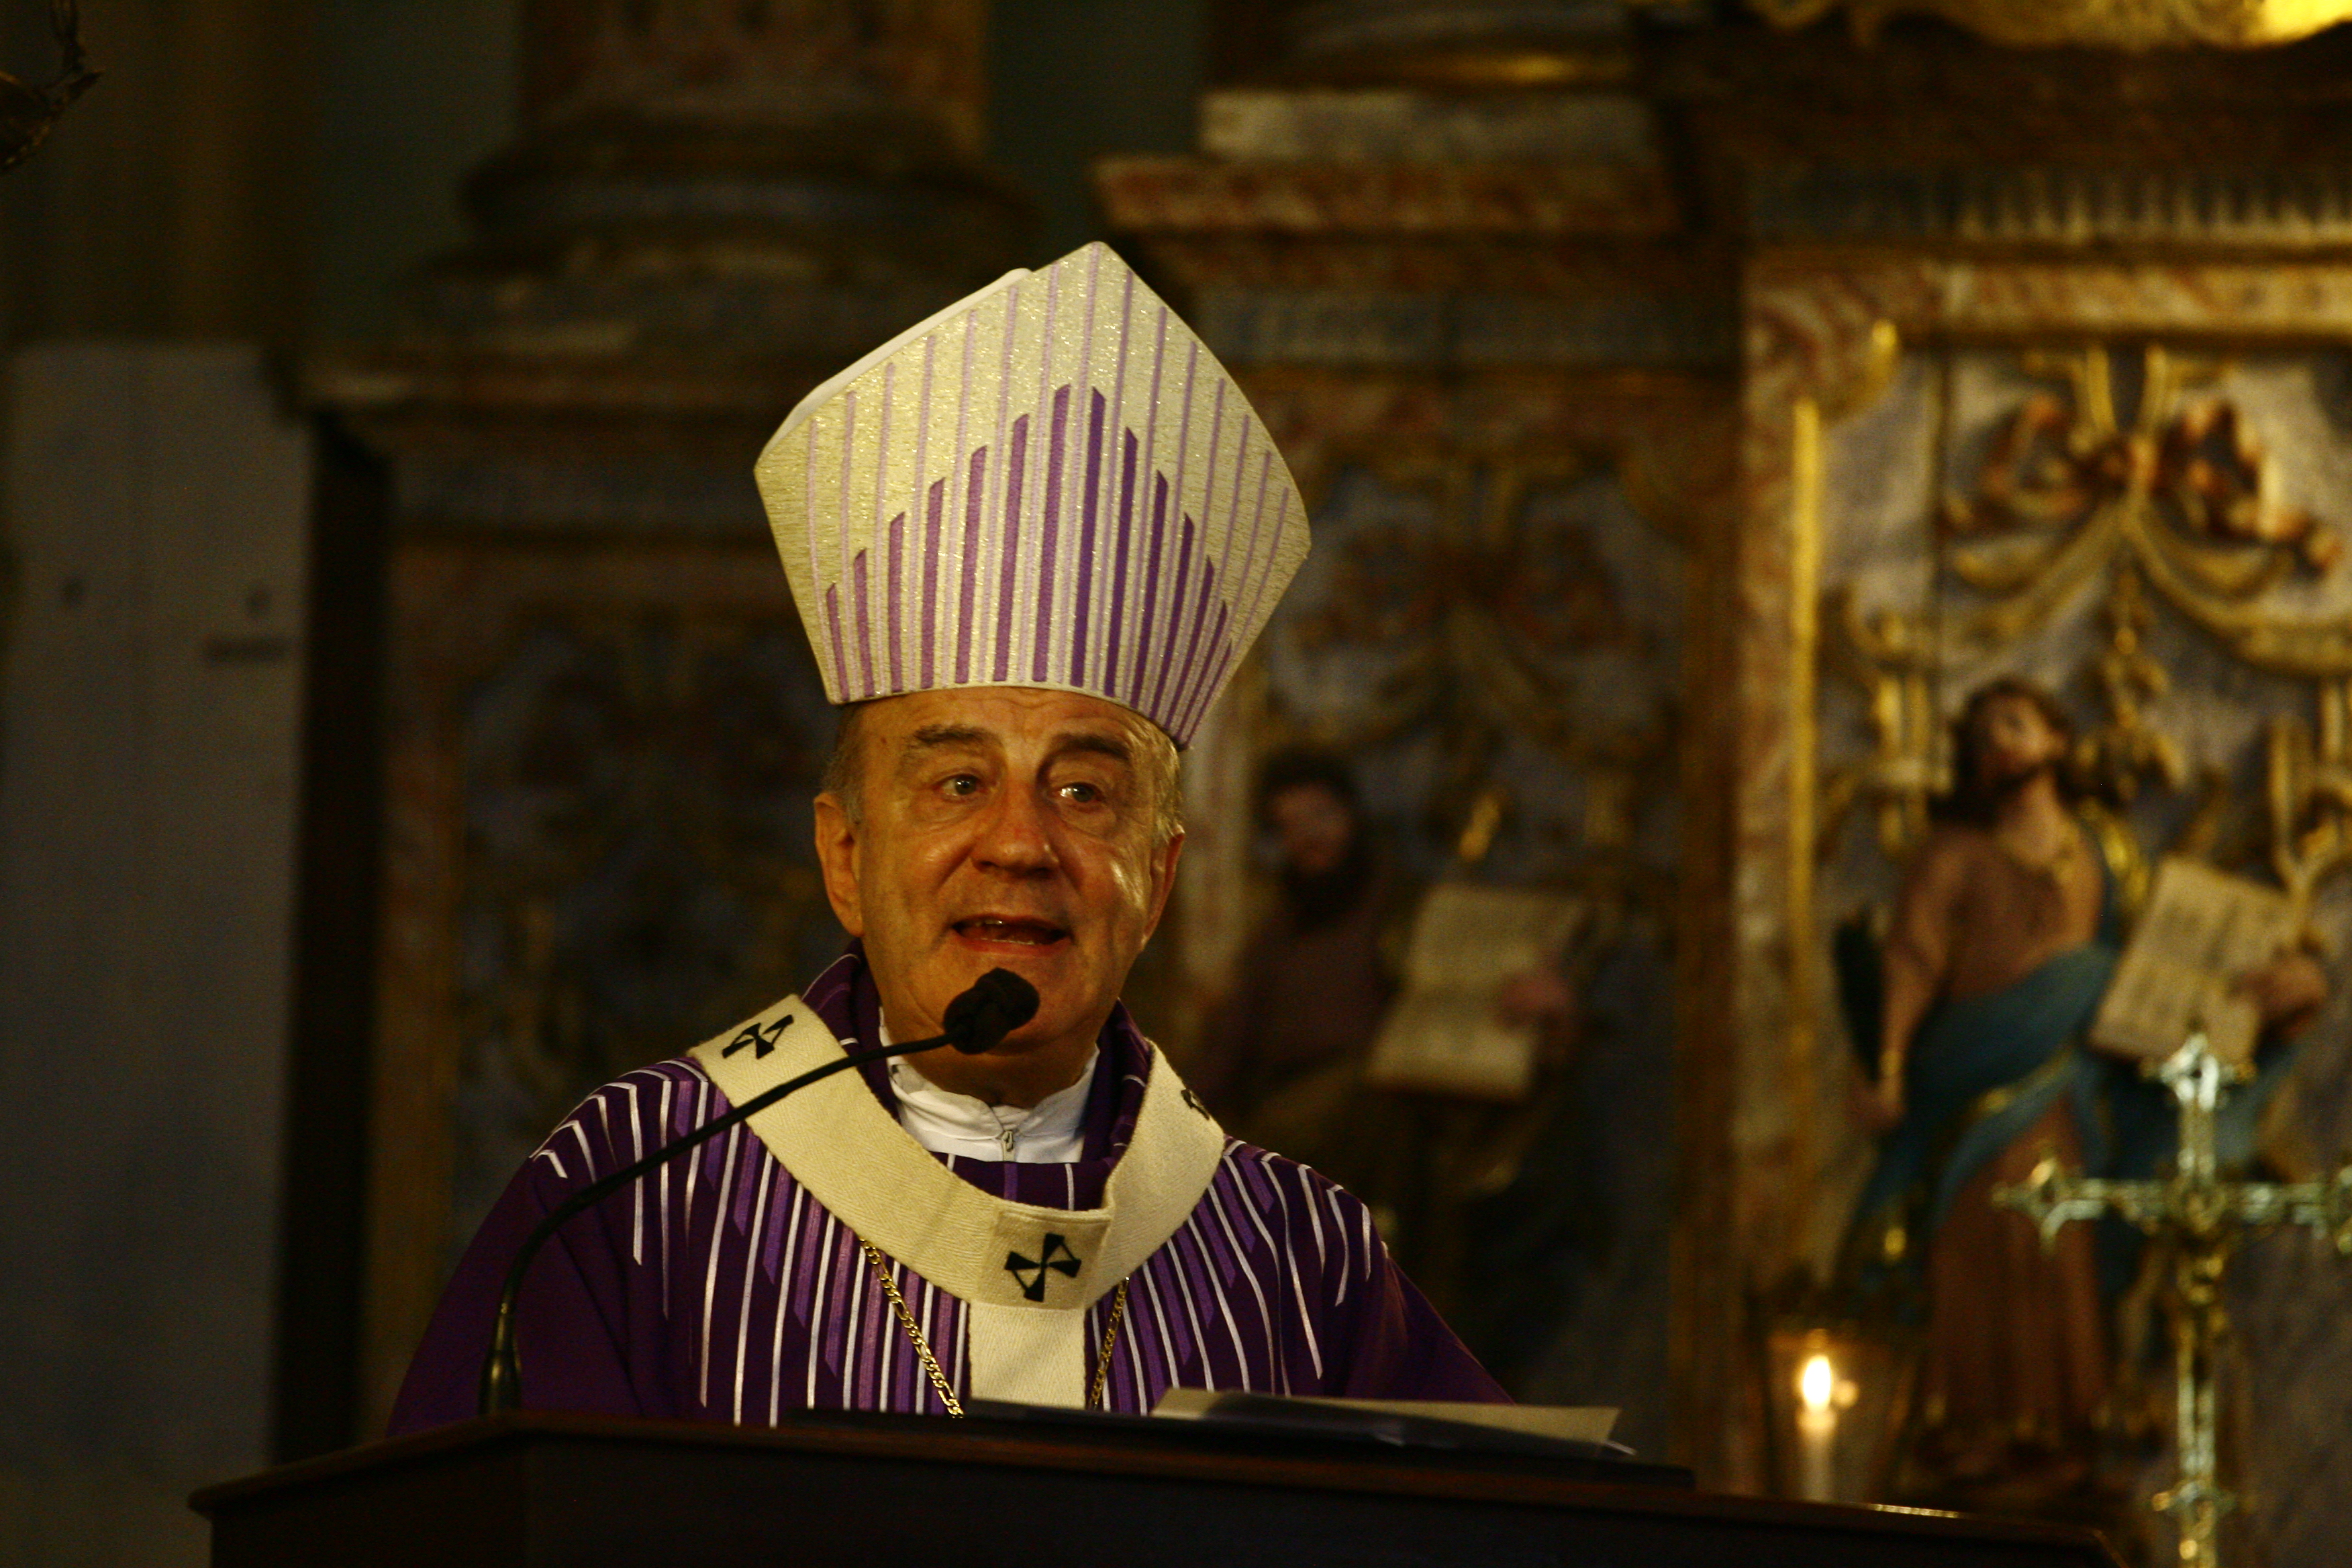 Arcebispo durante a missa em homenagem ao centenário de batismo de Irmã Dulce, em 2014